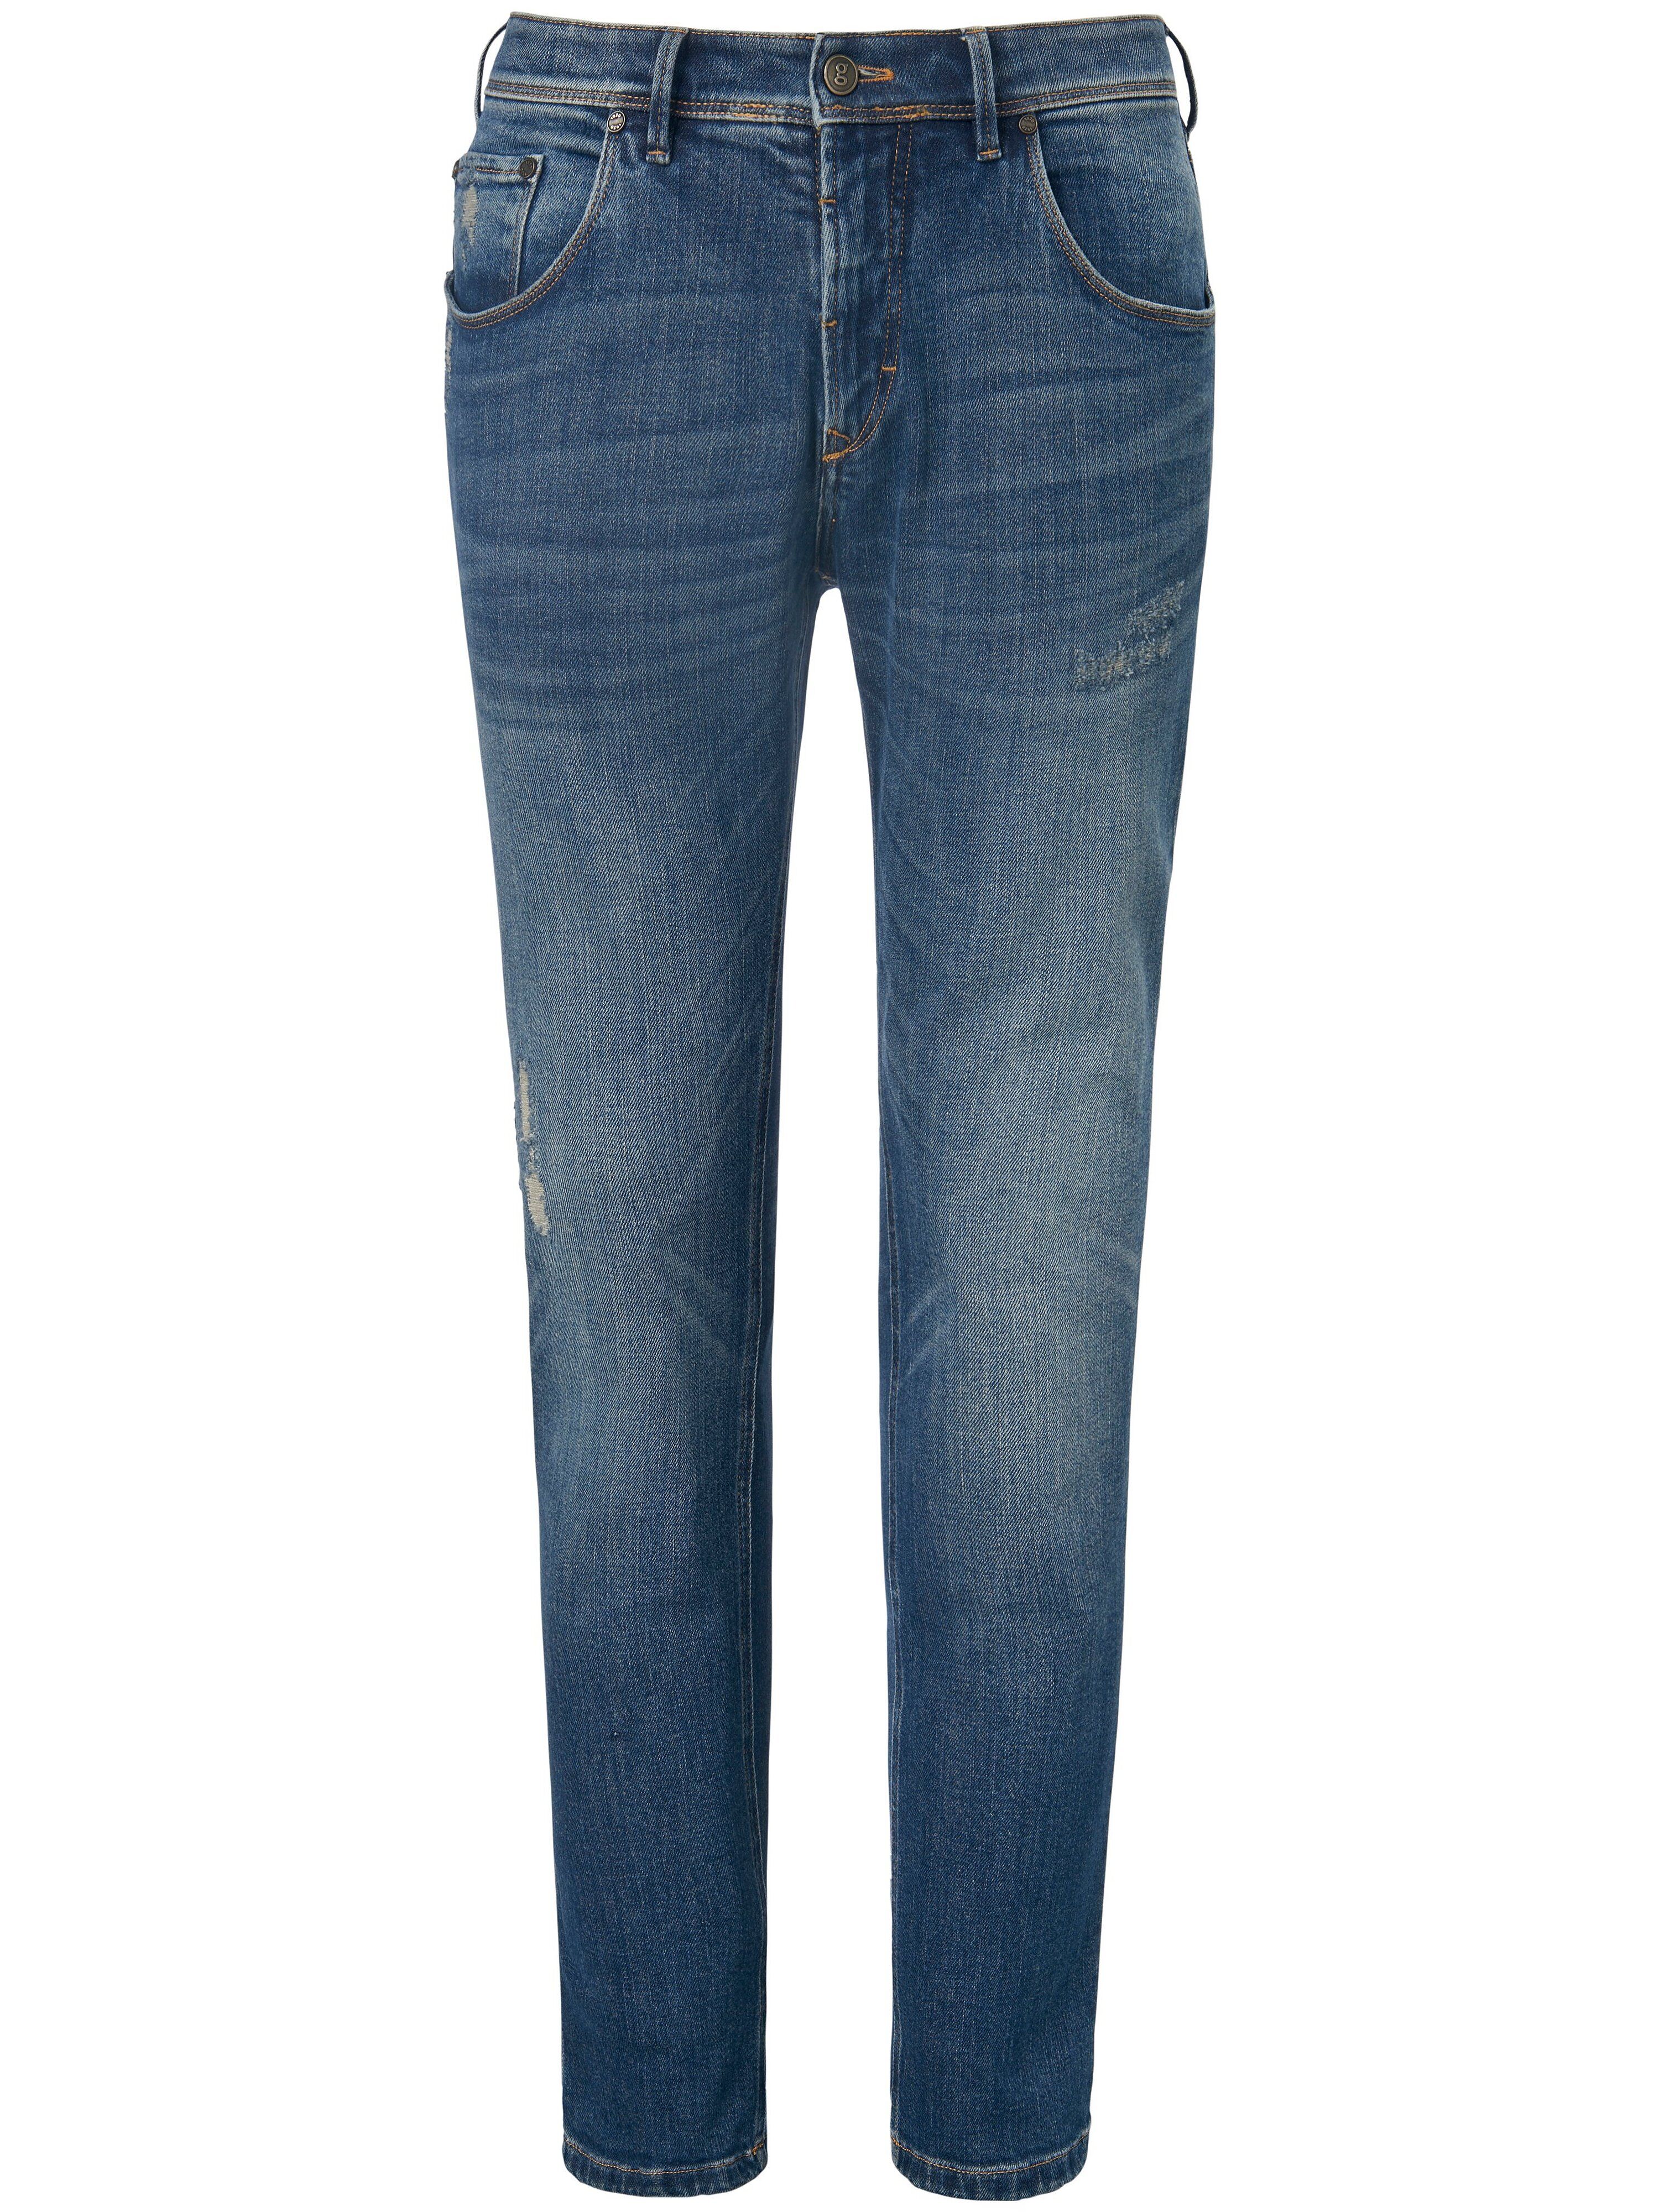 gardeur Jeans Modell Saxton, Inch 30 g1920 denim Herren 32